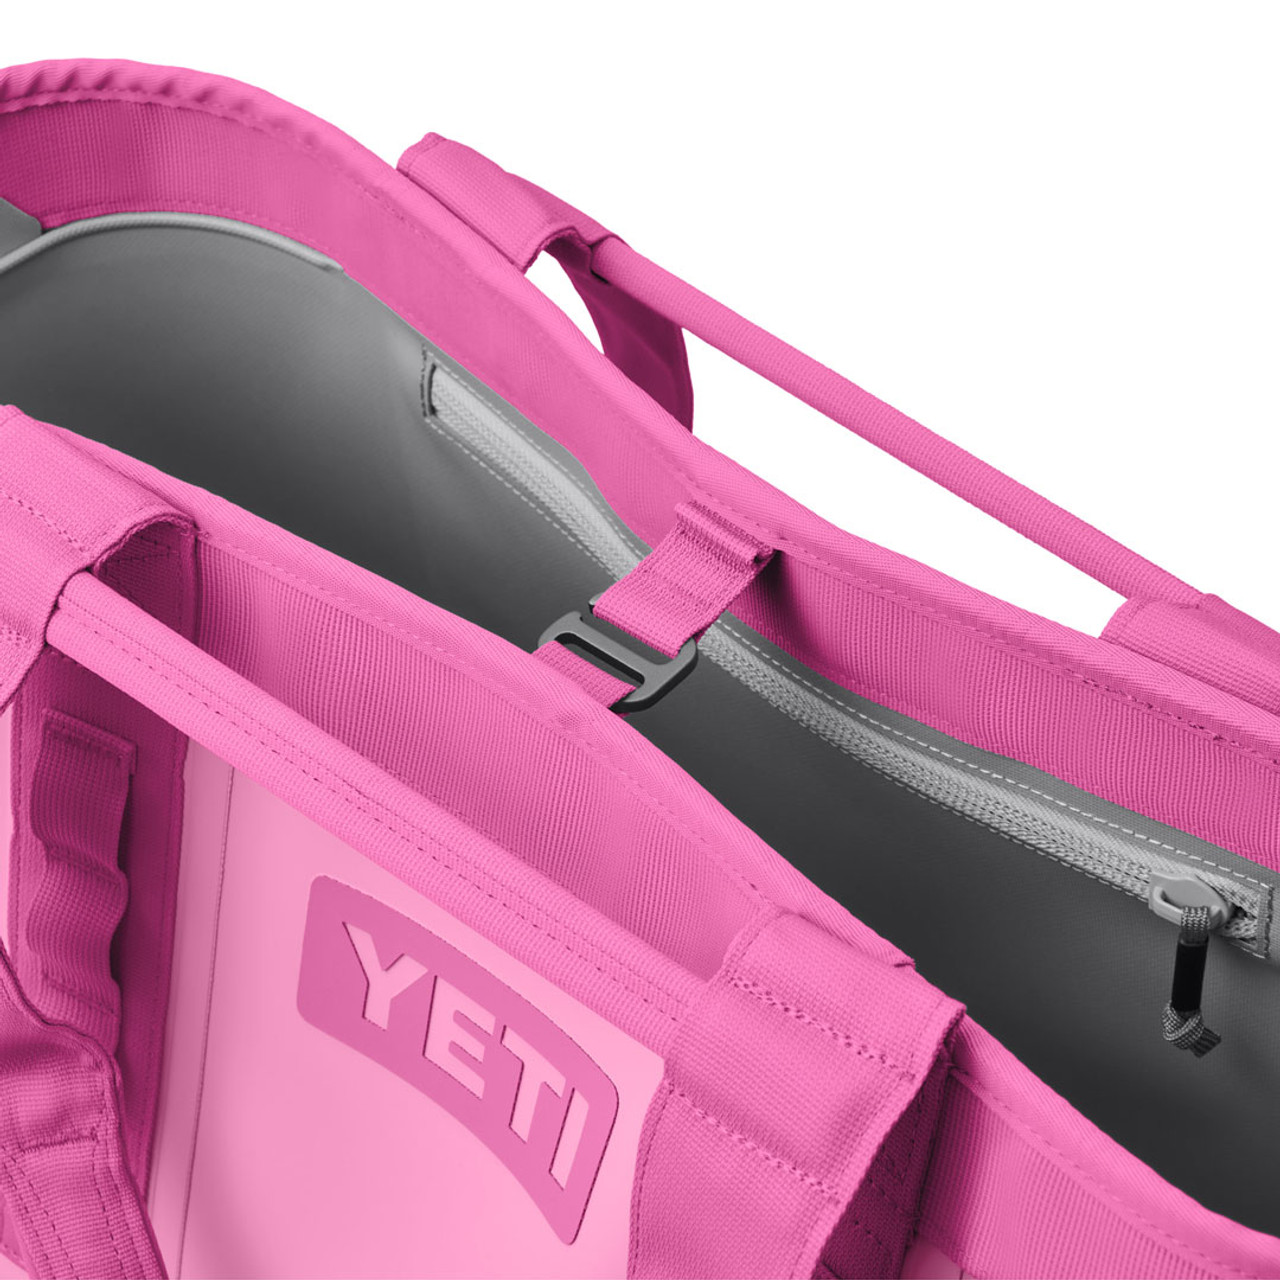 New Pink Power @YETI collection! #PinkPower #Yeti #Hopper12 #Camino35 , Yeti